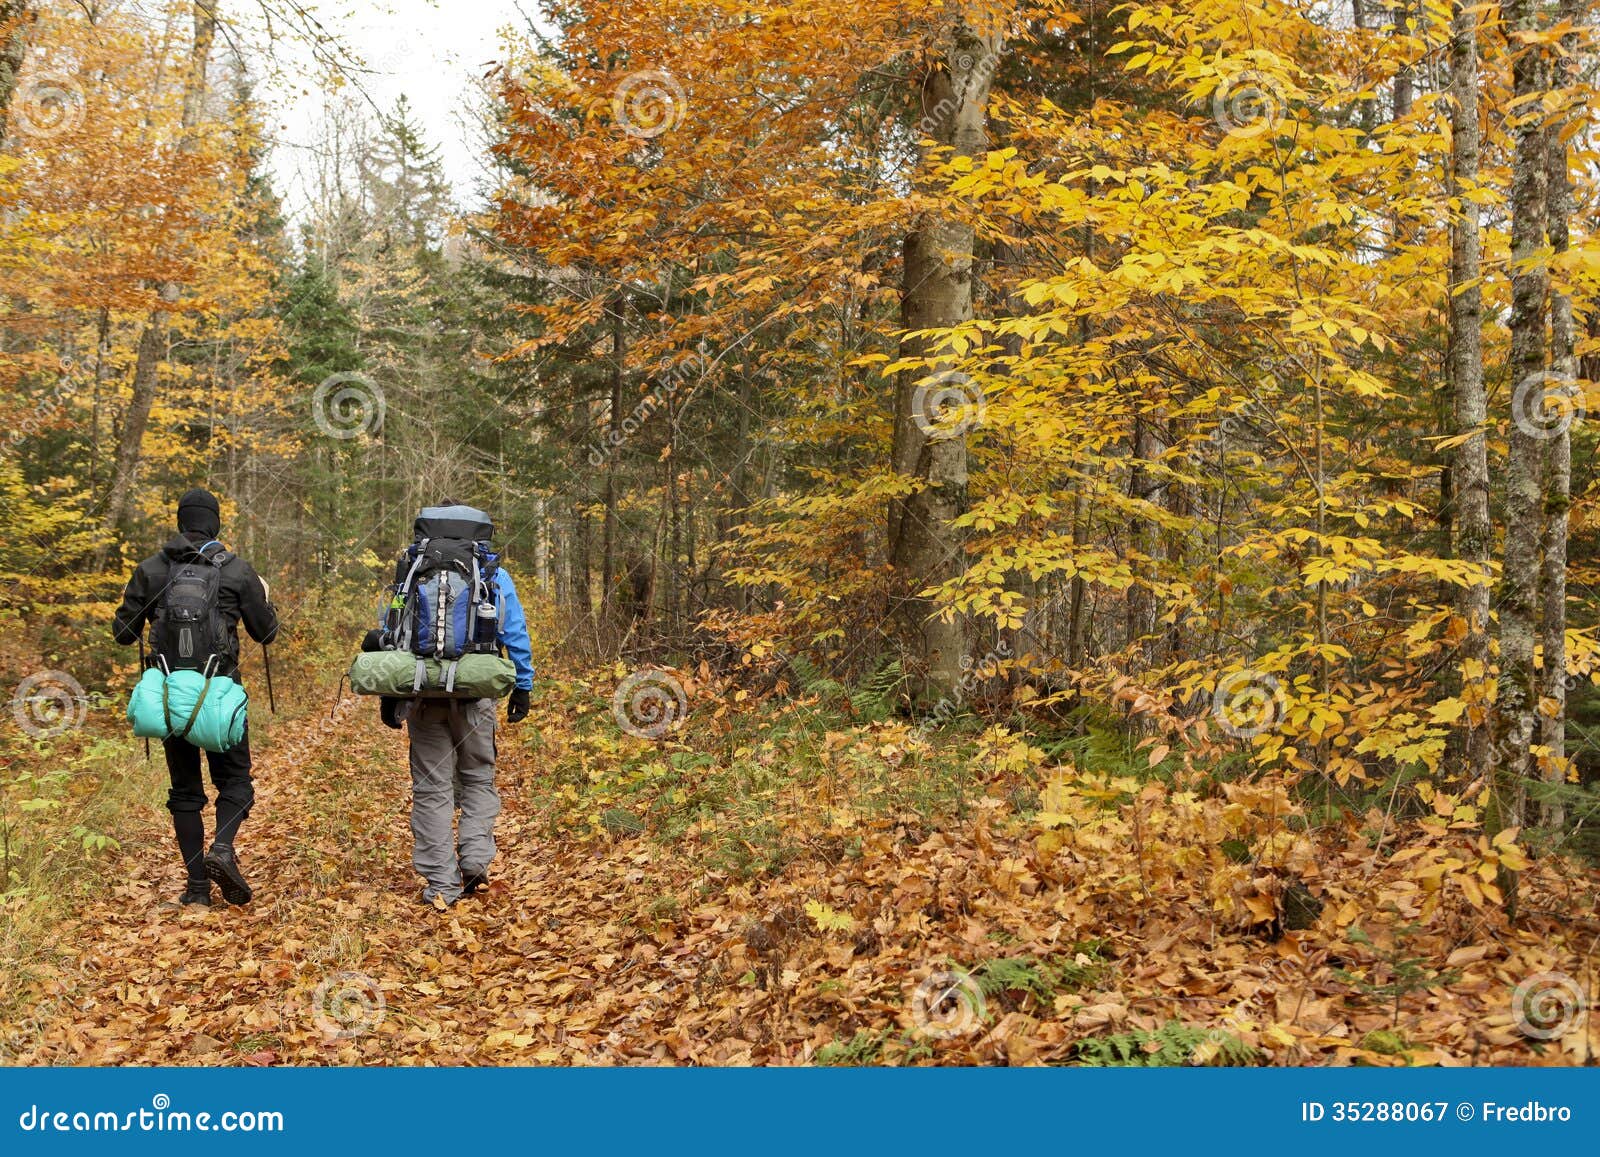 autumn trekking